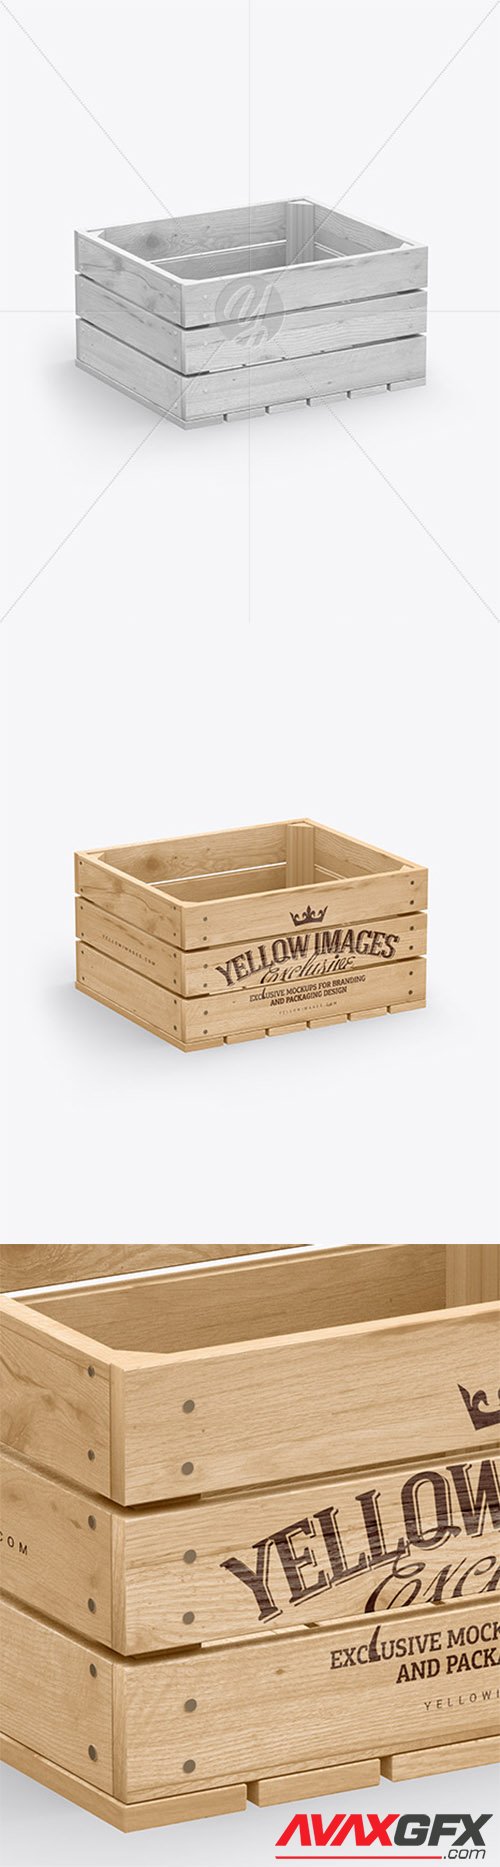 Wooden Crate Mockup 79311 TIF